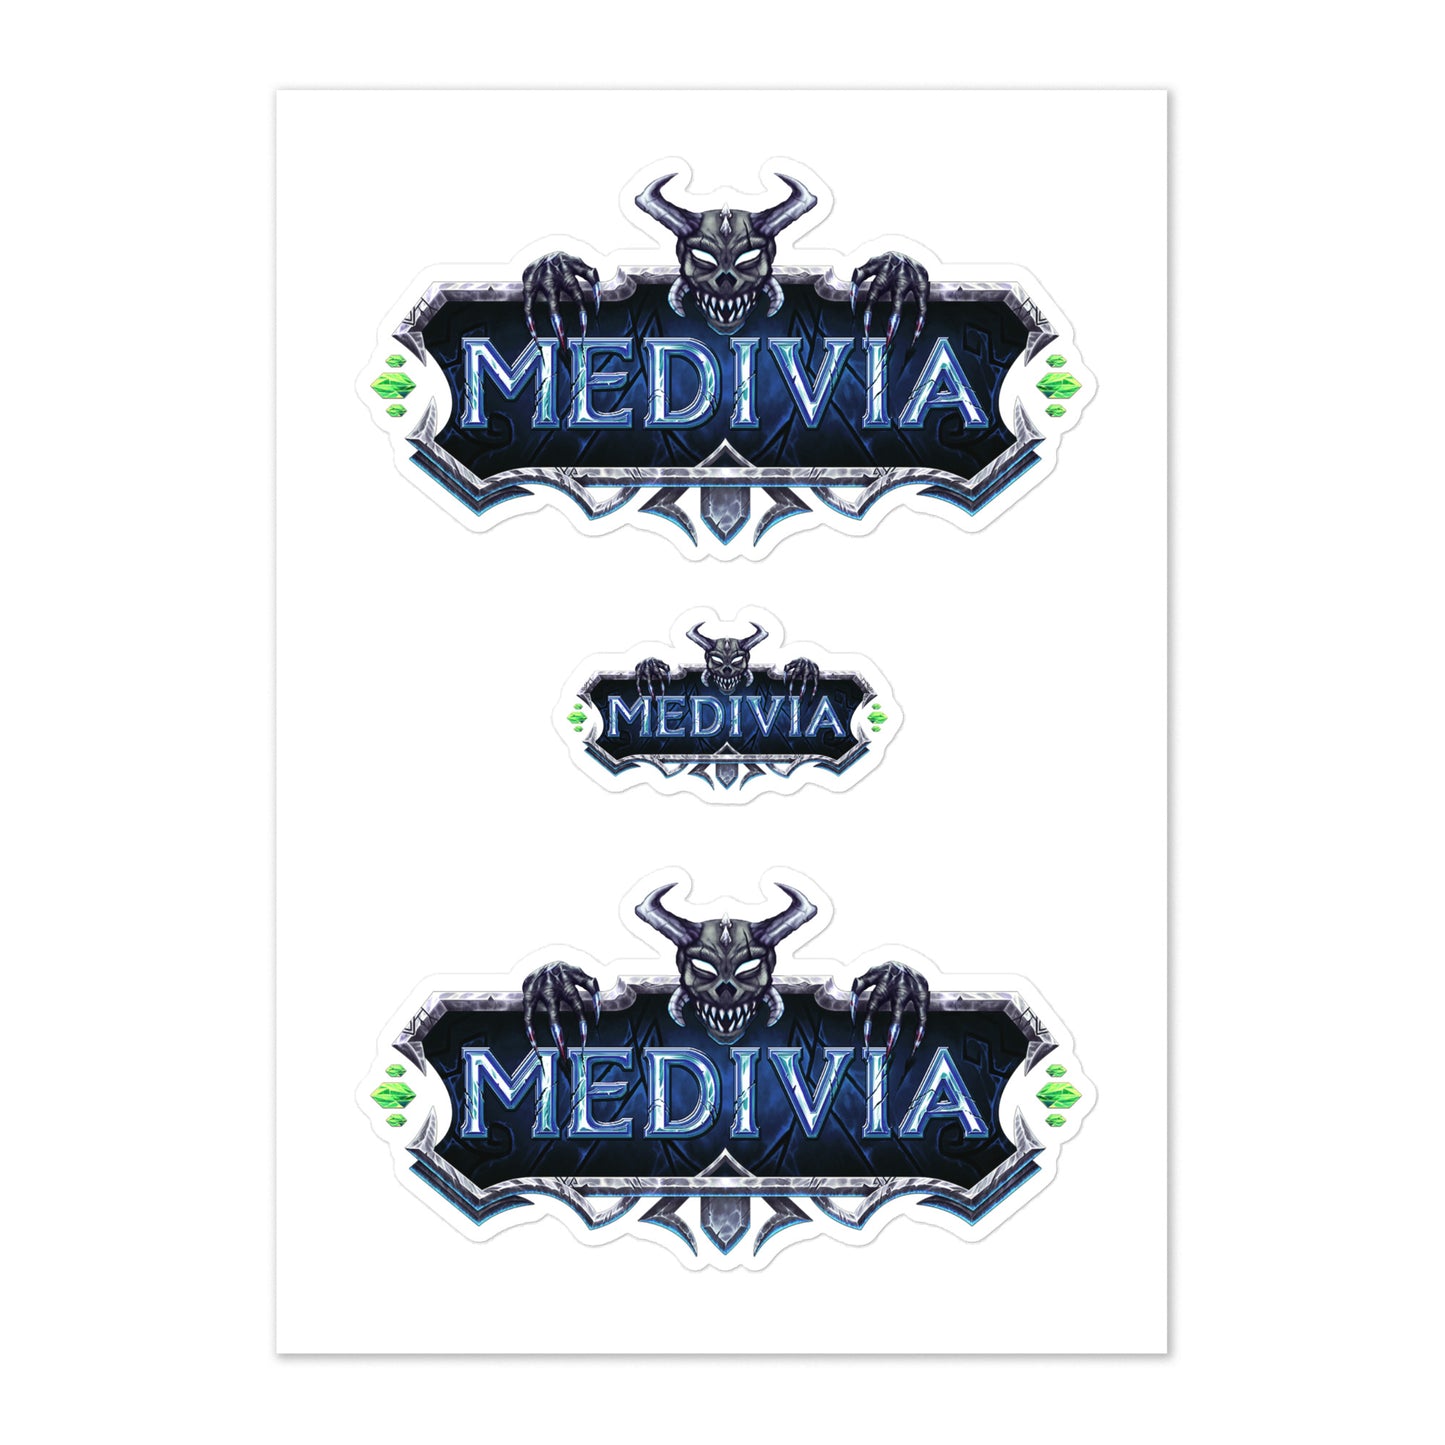 Medivia Logo Sticker Sheet